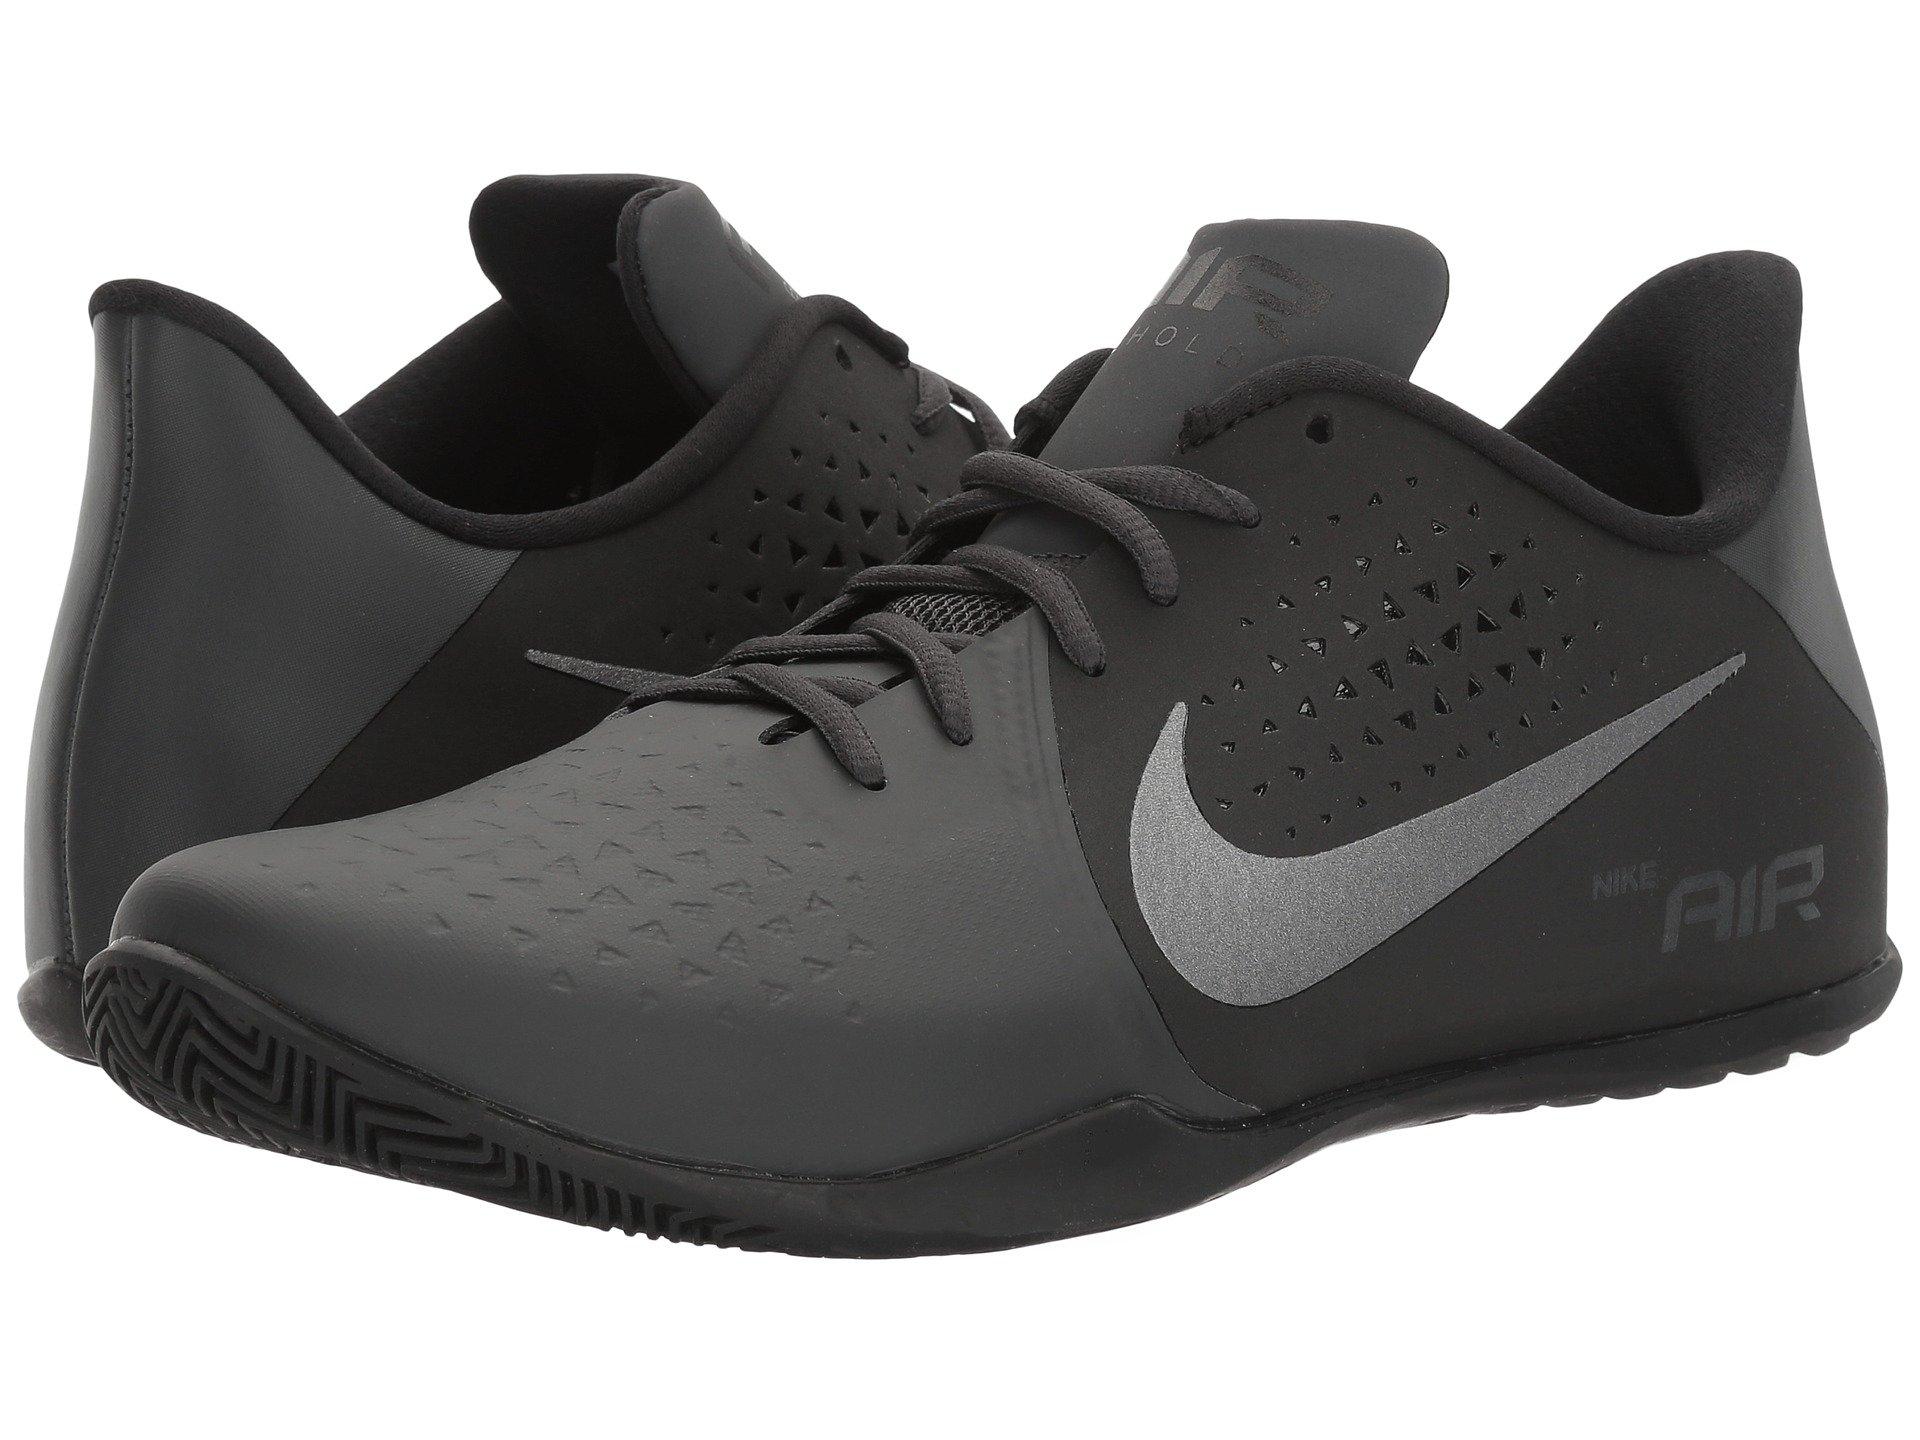 Nike Air Behold Low Nbk In Anthracite/metallic Dark Grey/black | ModeSens